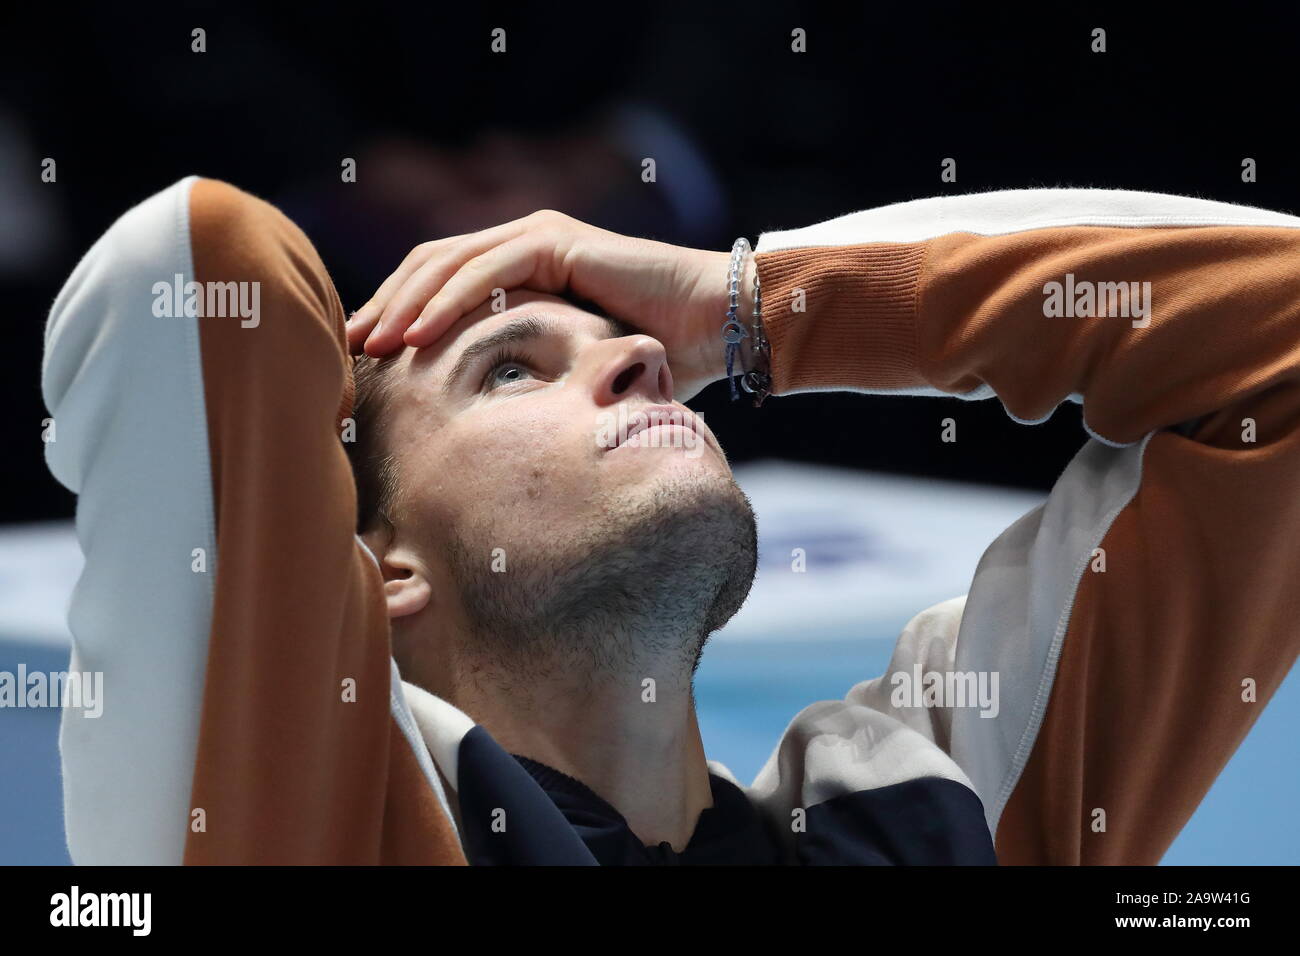 Londra, Inghilterra - 17 novembre: Thiem della Svizzera reagisce dopo la sua sconfitta da Stefanos Tsitsipas nel finale di ATP World Tour Finals presso l'Arena O2 il 17 novembre 2019 a Londra, Inghilterra. Foto di Paul Cunningham Foto Stock